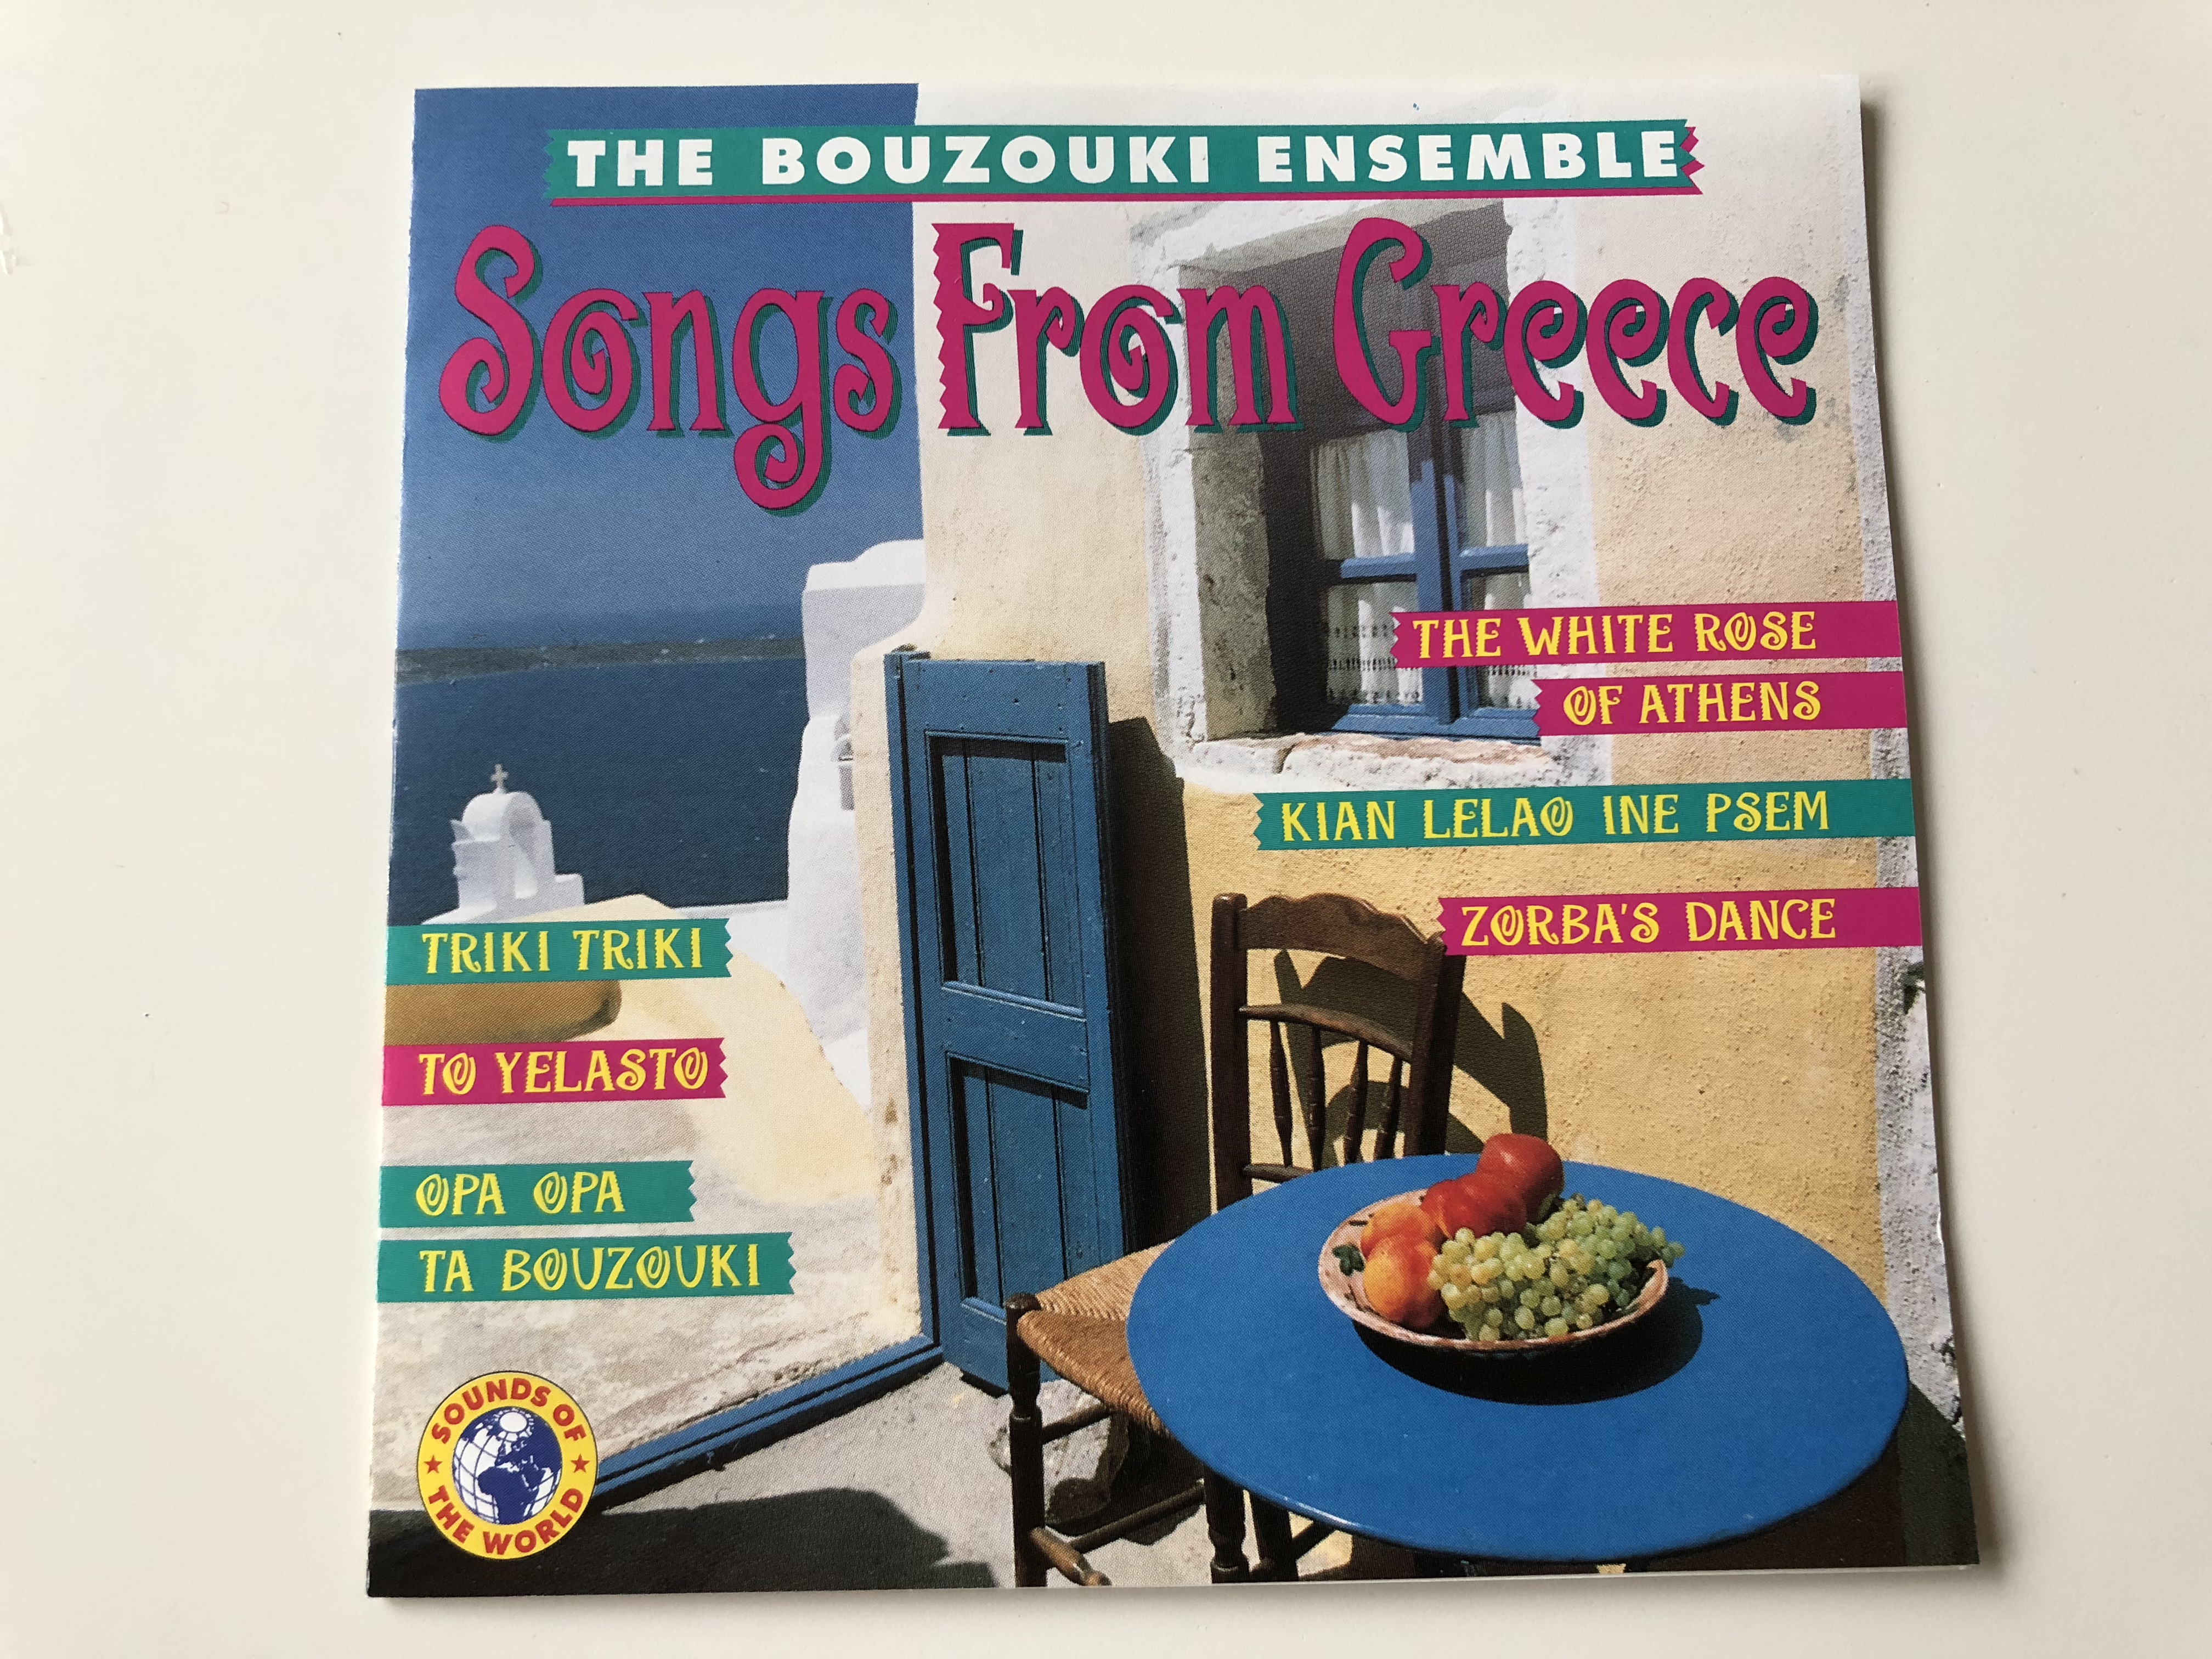 the-bouzouki-ensemble-songs-from-greece-triki-triki-to-yelasto-opa-opa-the-white-rose-of-athens-zorba-s-dance-audio-cd-1994-sow-90131-1-.jpg